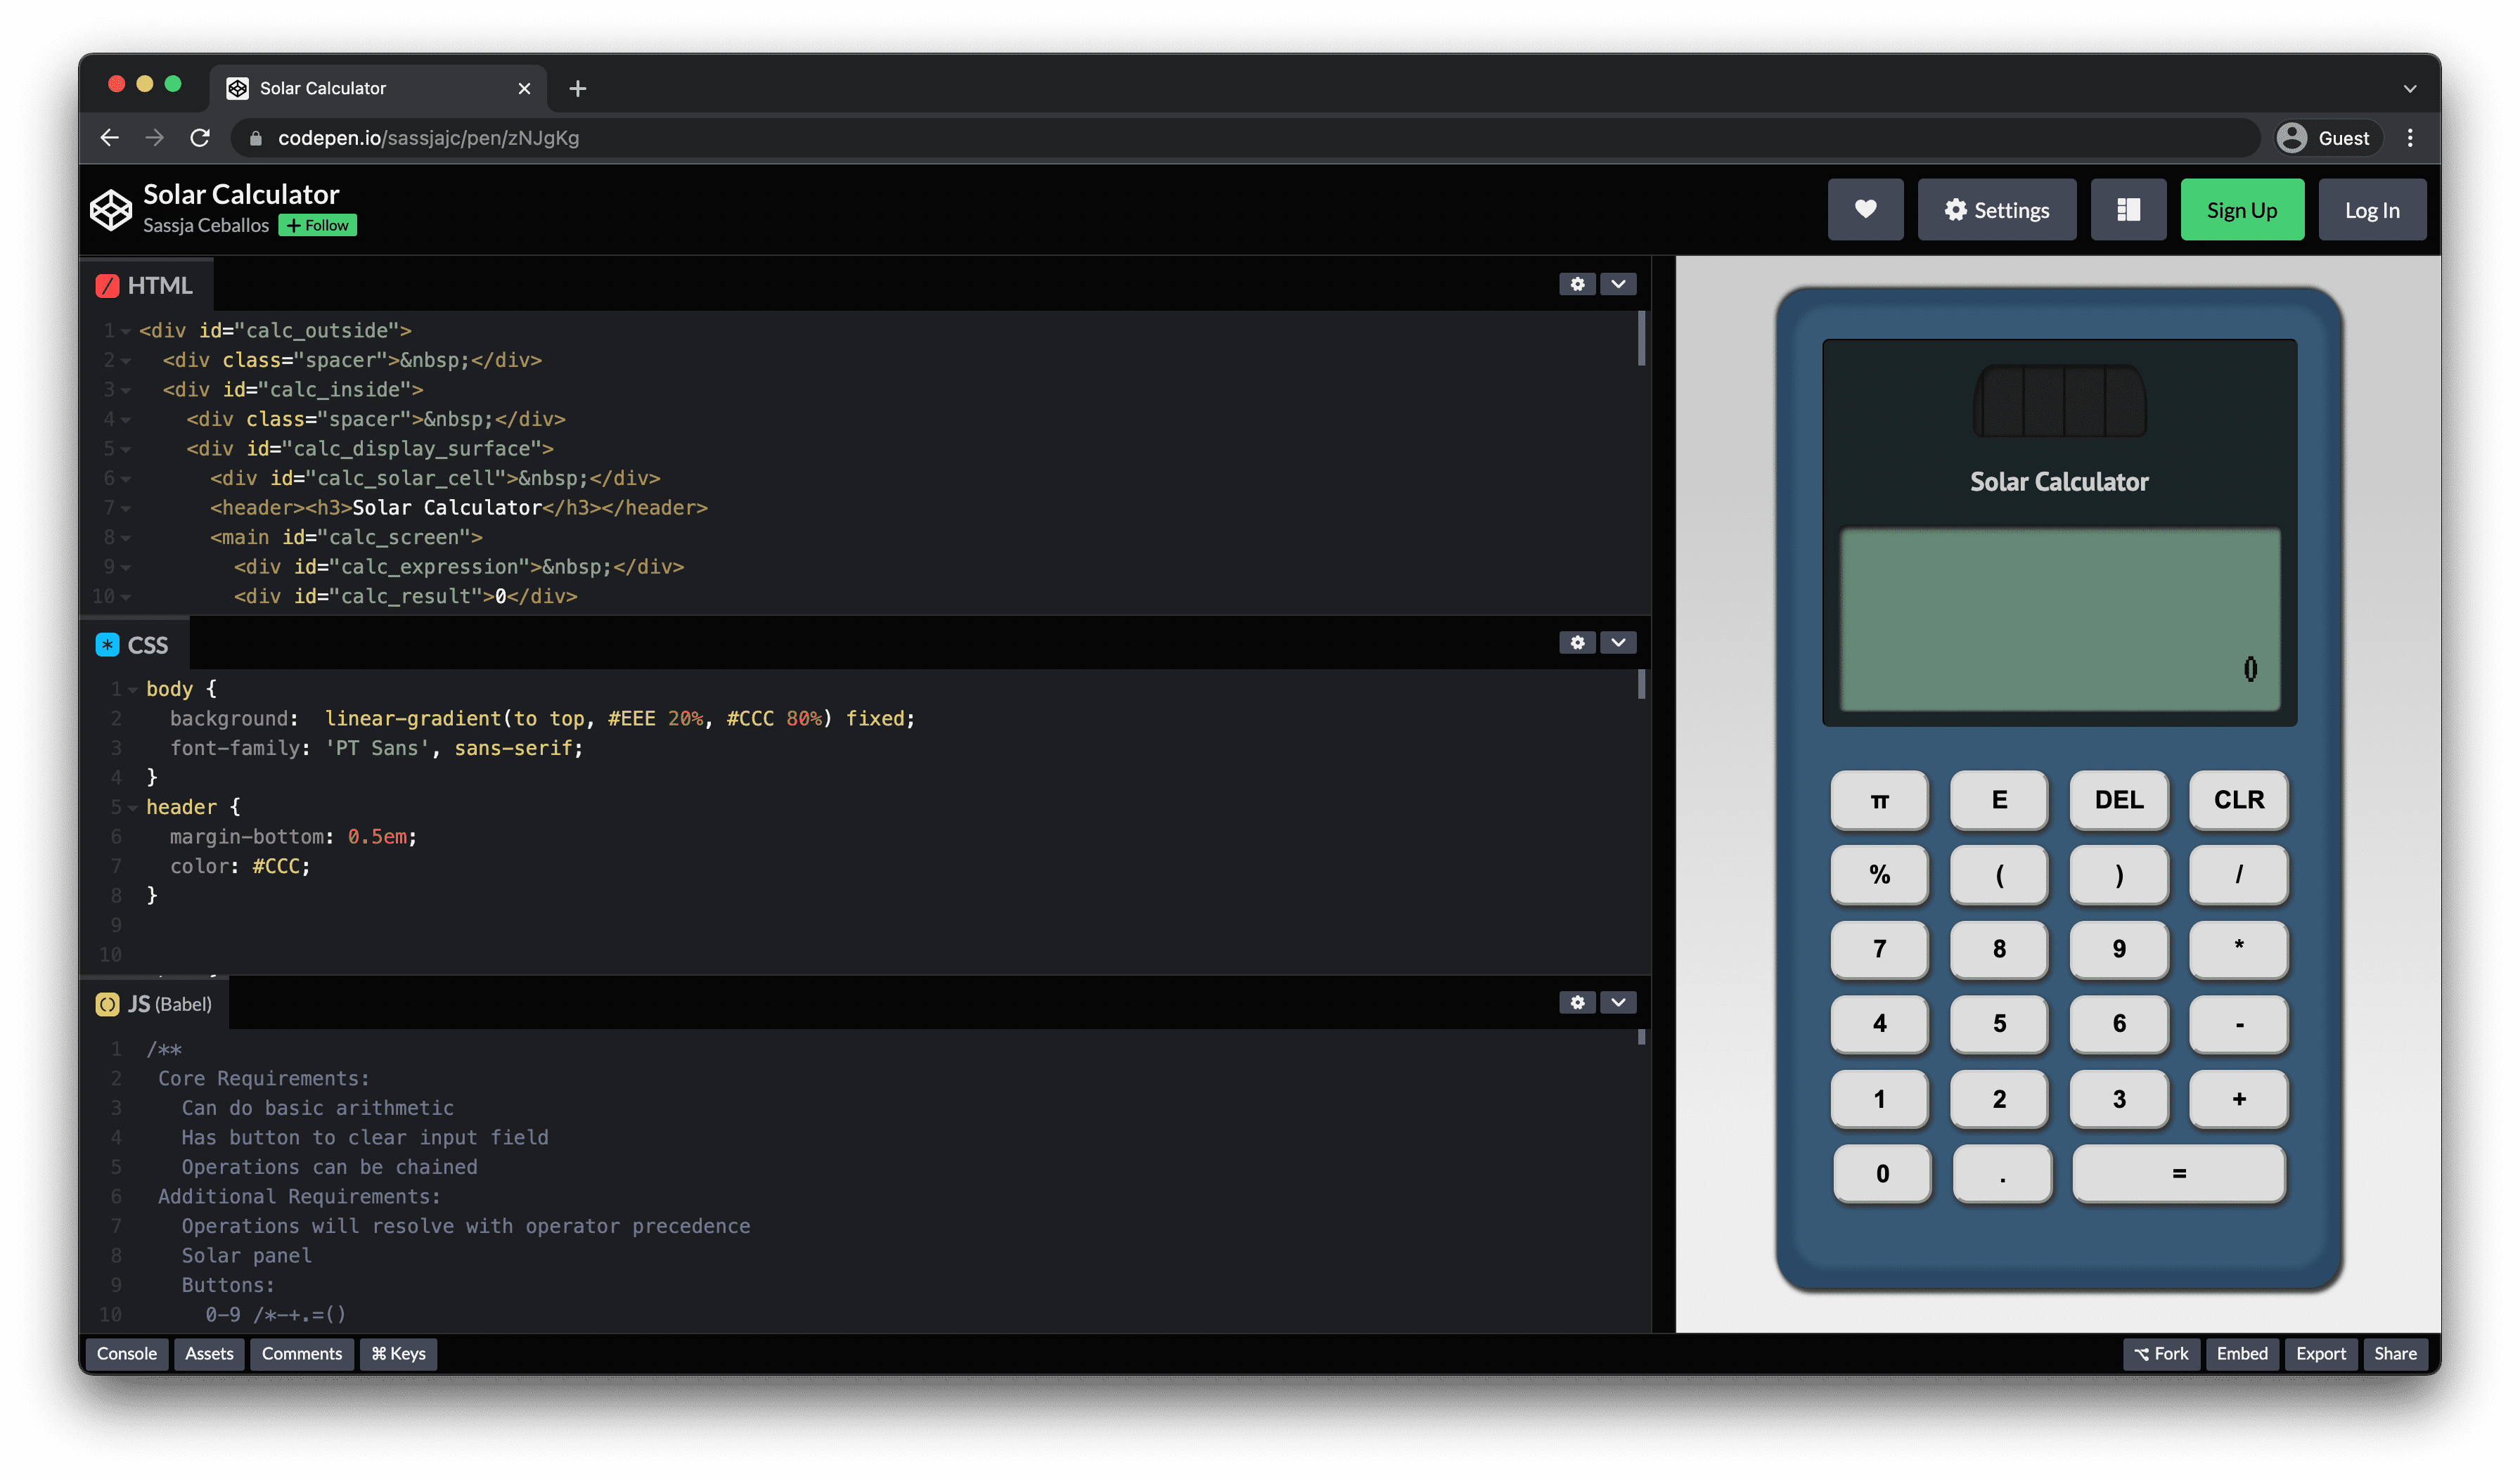 Tampilan CodePen dengan panel HTML, CSS, dan JS bertumpuk di sebelah kiri dan pratinjau kalkulator di sebelah kanan.